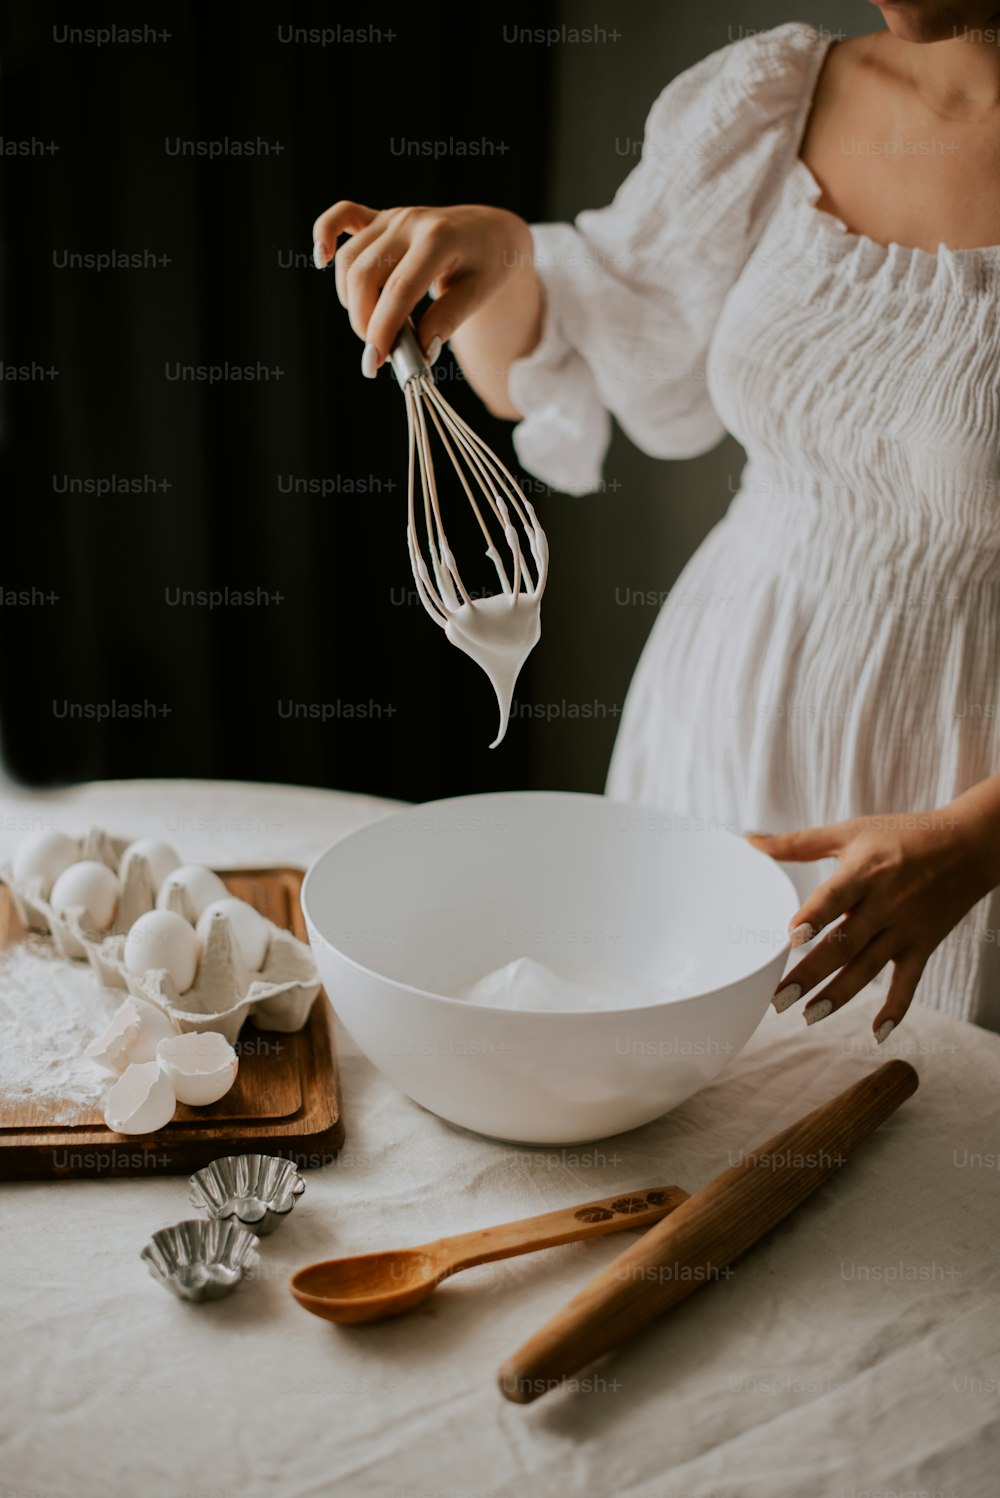 Una donna in un vestito bianco sbatte le uova in una ciotola